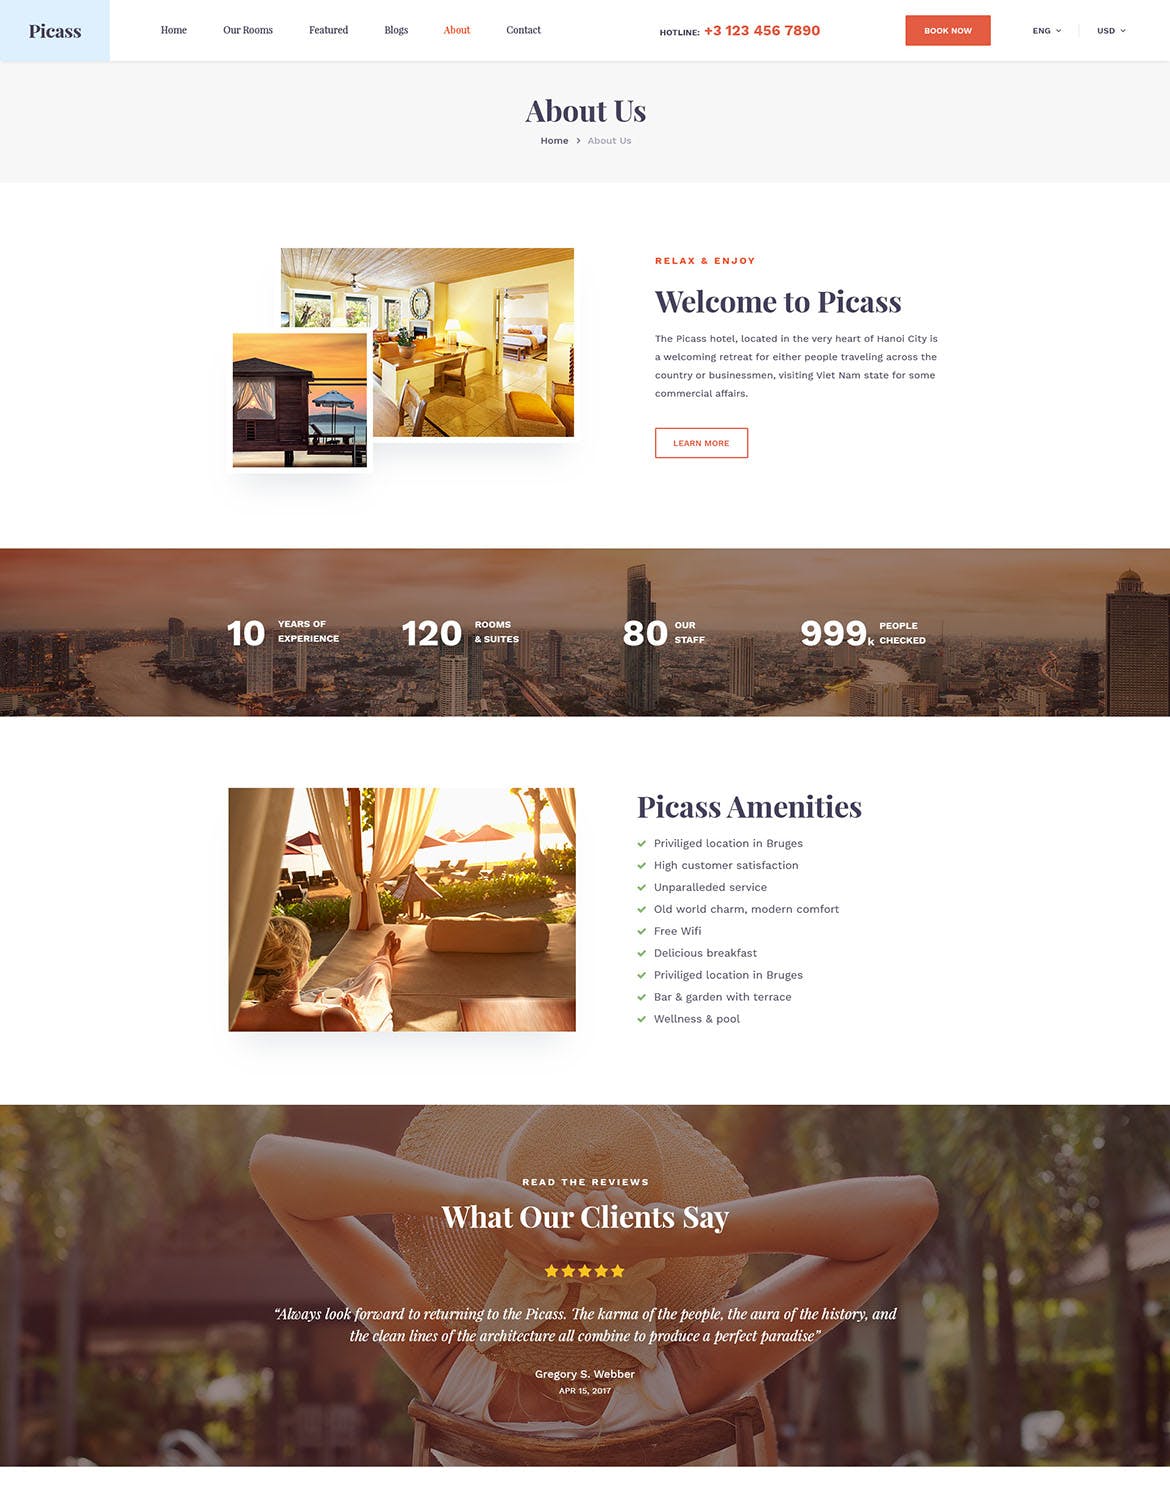 酒店预订网站设计PSD模板 Picass | Hotel PSD Templates插图(8)